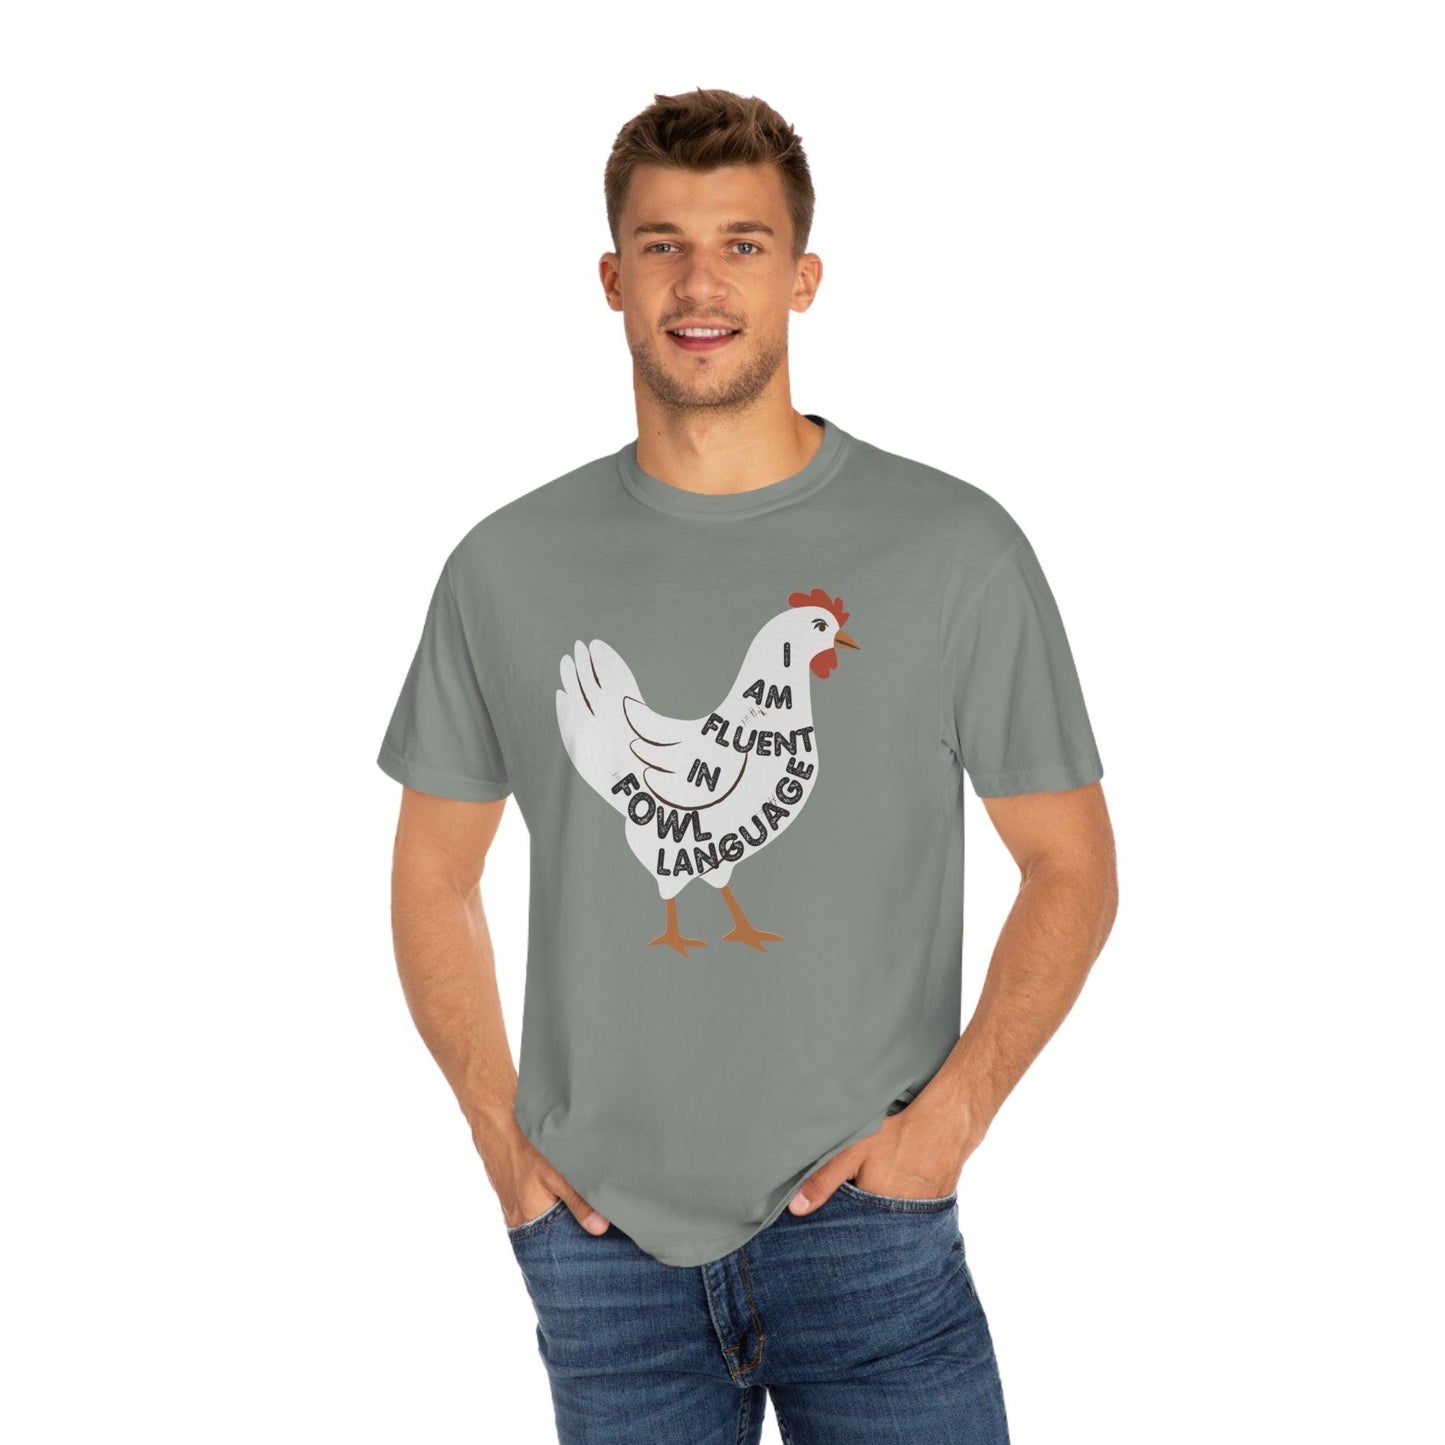 Chicken Shirt Chicken Tee Chicken Owner Gift - Gift For Chicken Lover gift, Fluent in Fowl Language shirt